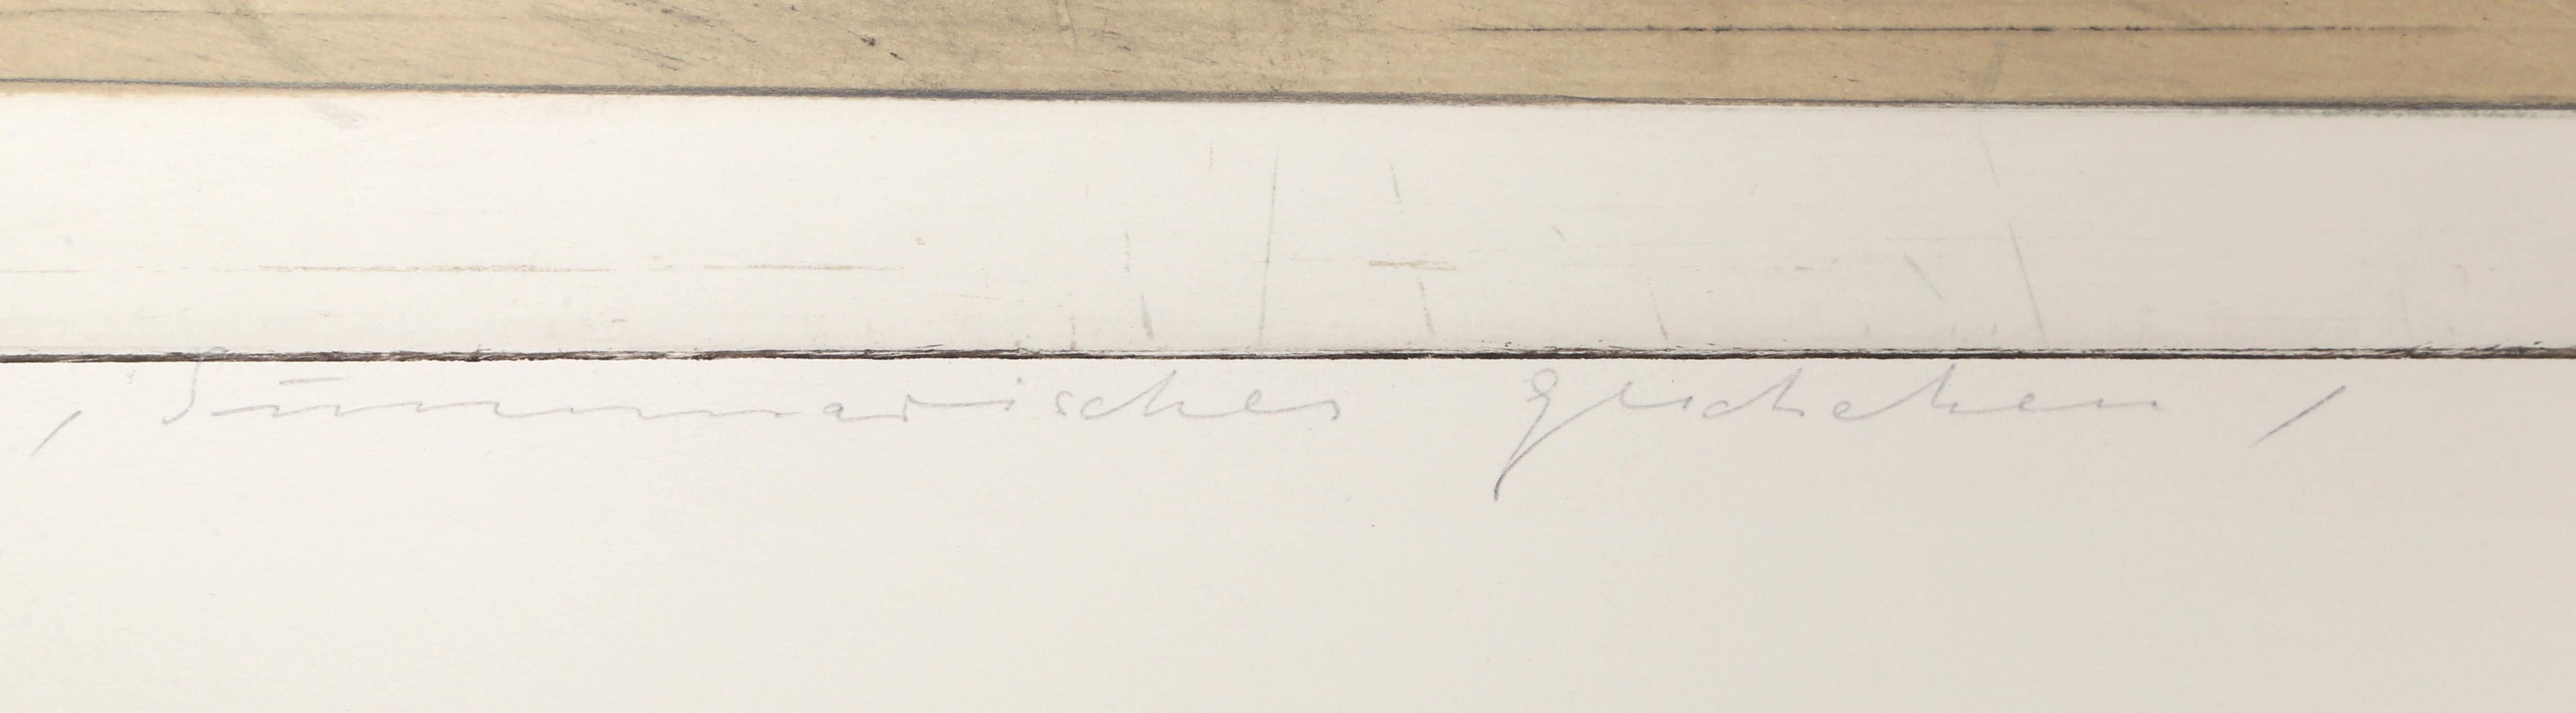 Künstler:	Karl Fred Dahmen
Titel:	Simmerisches Gercheheim
Jahr: 1979
Medium:	Aquatintaradierung, mit Bleistift signiert, nummeriert, datiert und betitelt
Auflage: 57/75
Größe:	35 x 28,5 Zoll (88,9 x 72,4 cm)